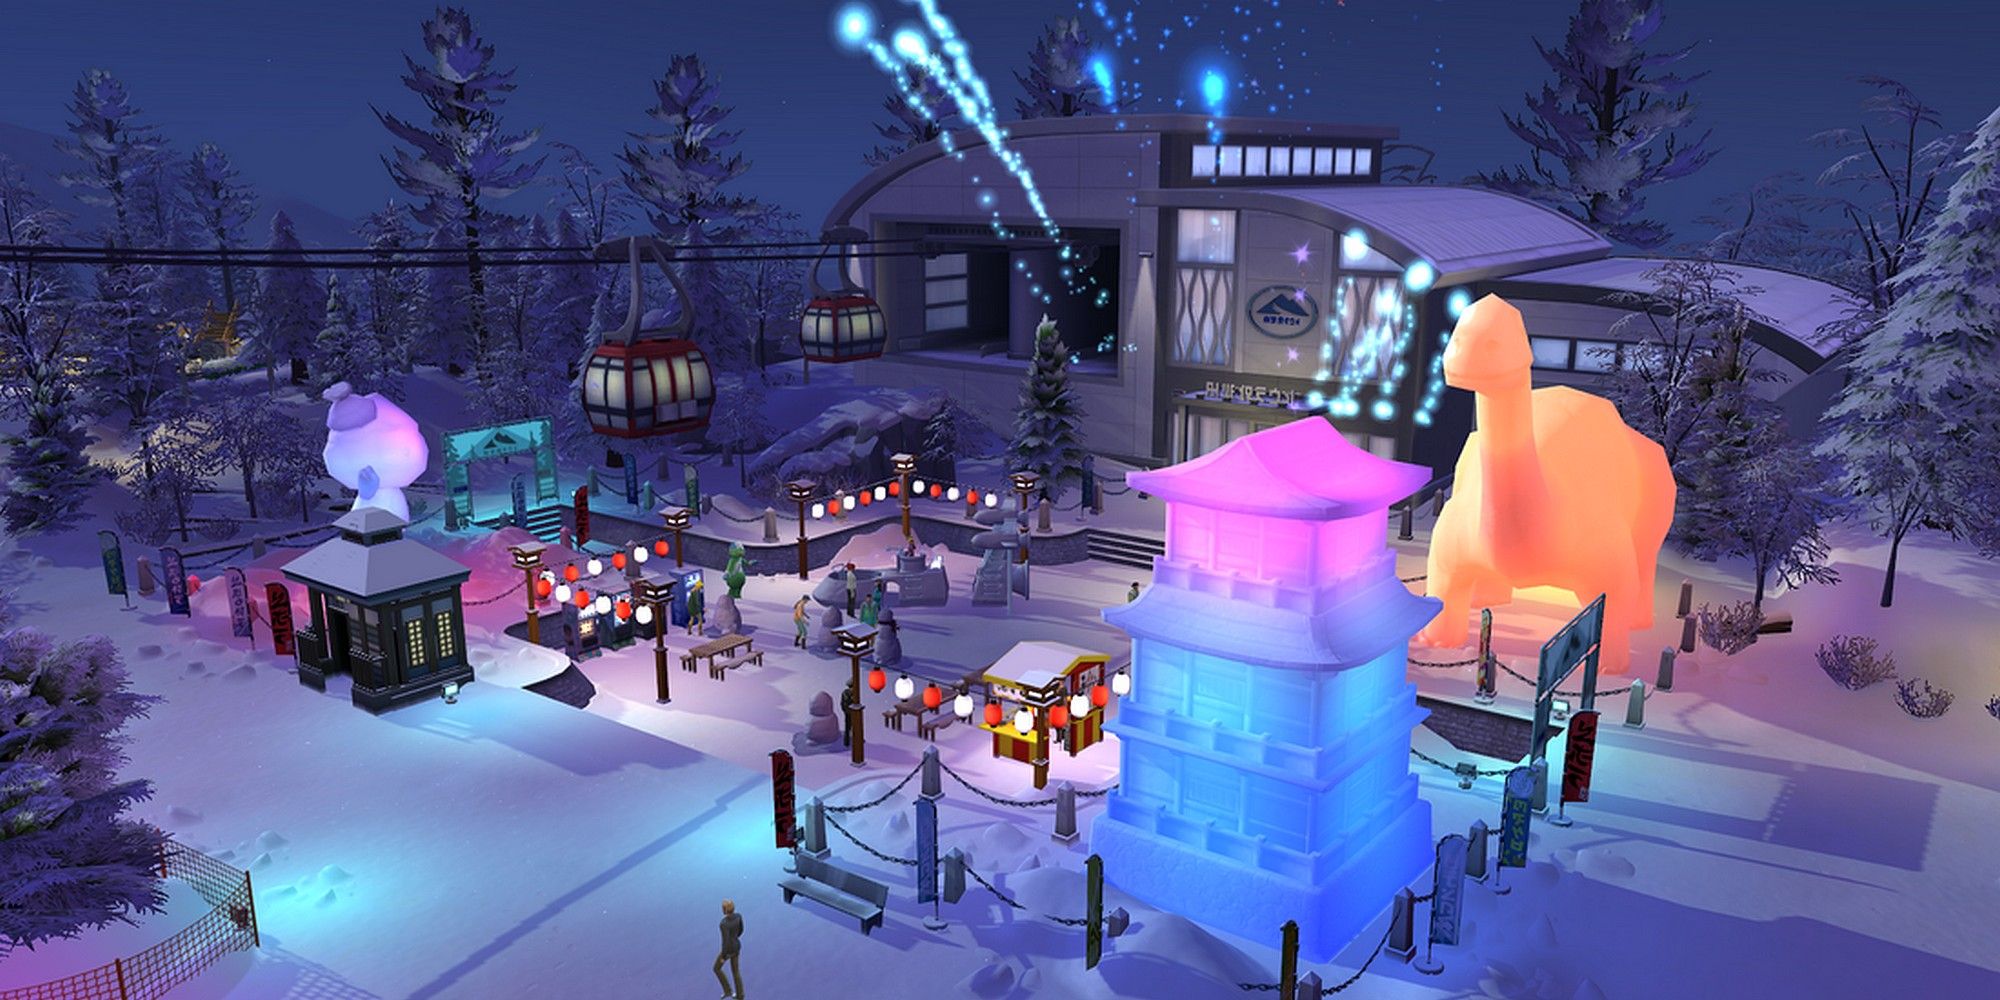 Sims 4 Snowy Escape Festival of Snow Mt Komorebi